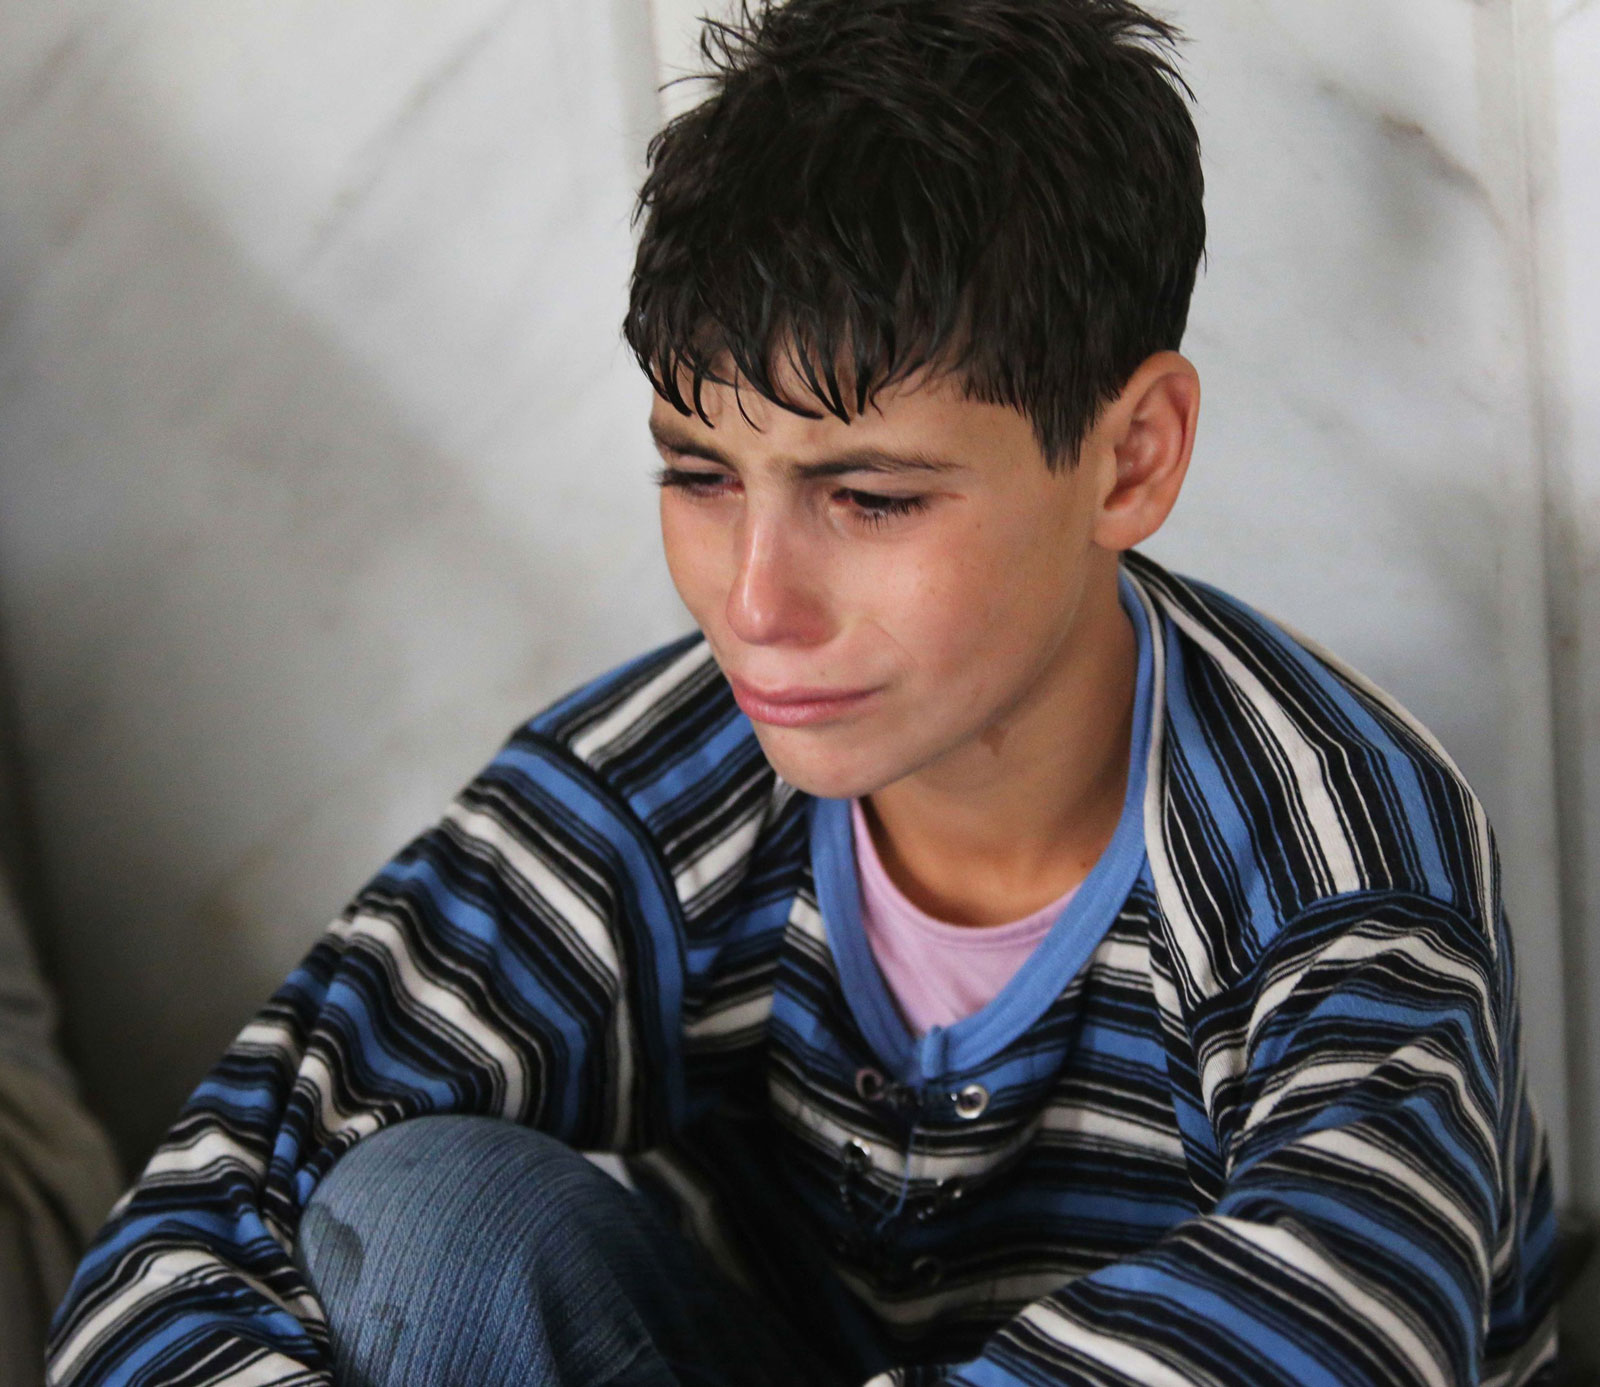 Weinender syrischer Junge nach einem Gasangriff (2013)